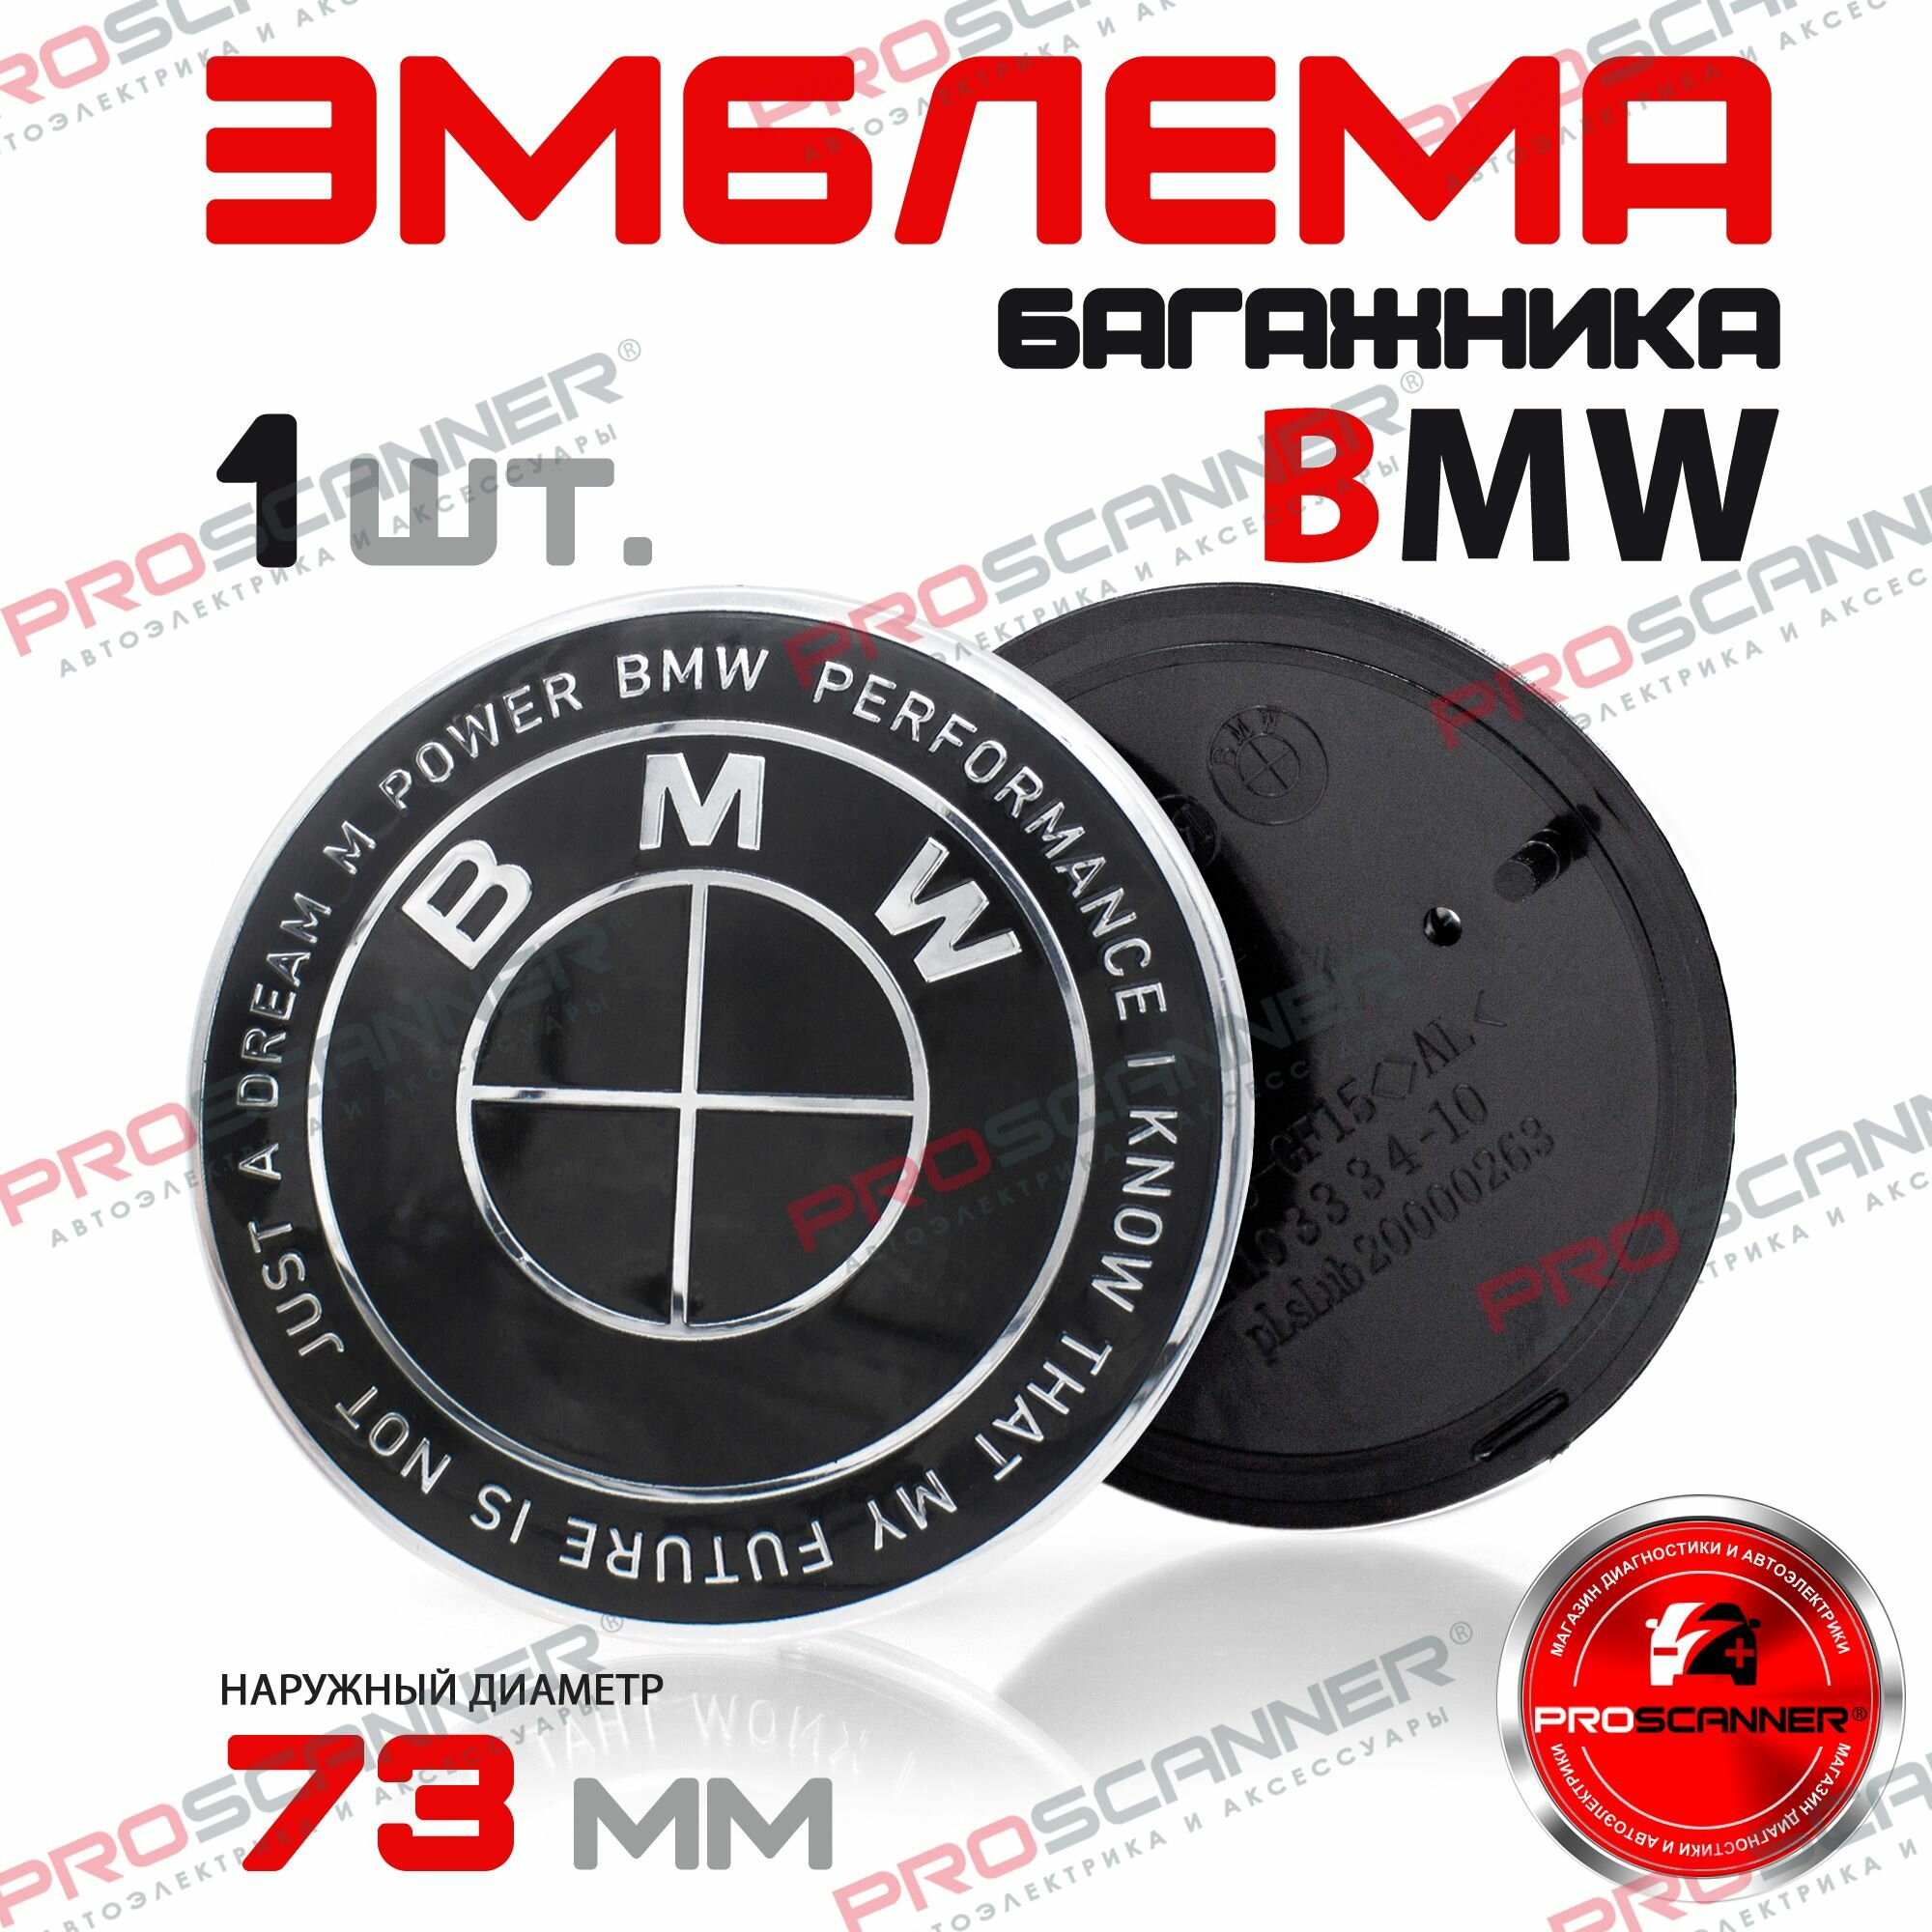 Эмблема багажника для BMW диаметр 73мм / Значок Шильдик для БМВ черная